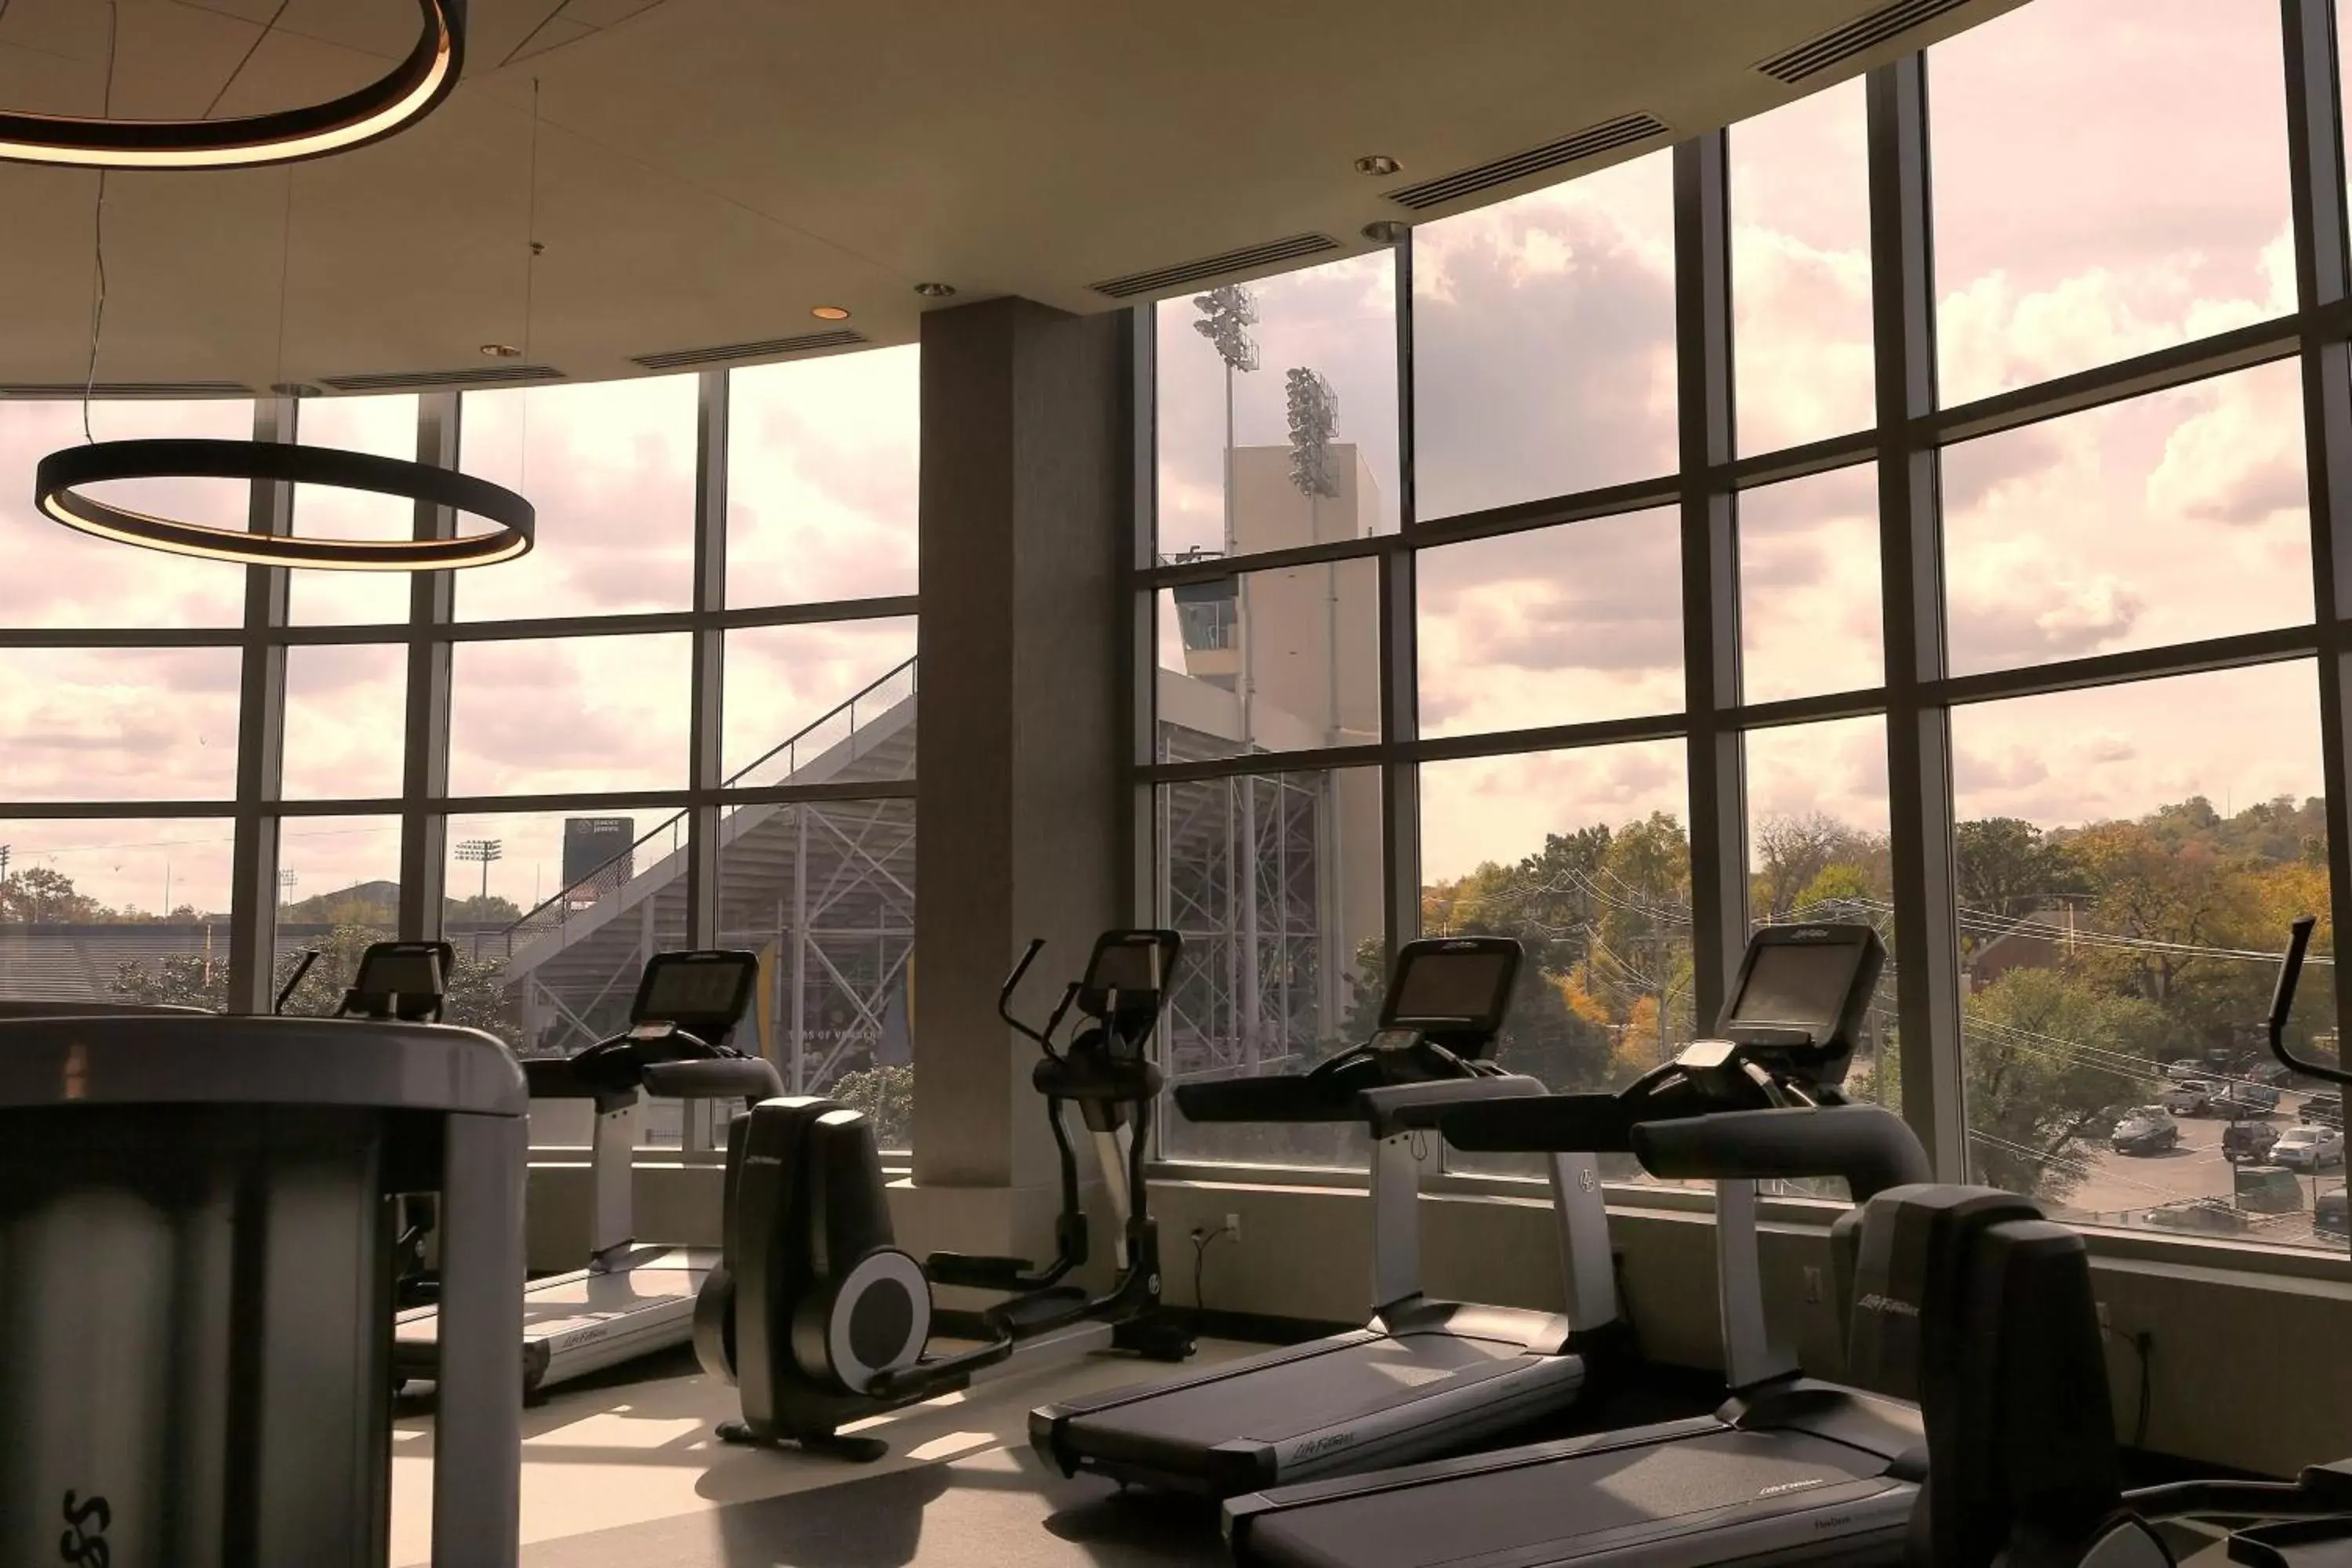 Fitness centre/facilities in Nashville Marriott at Vanderbilt University